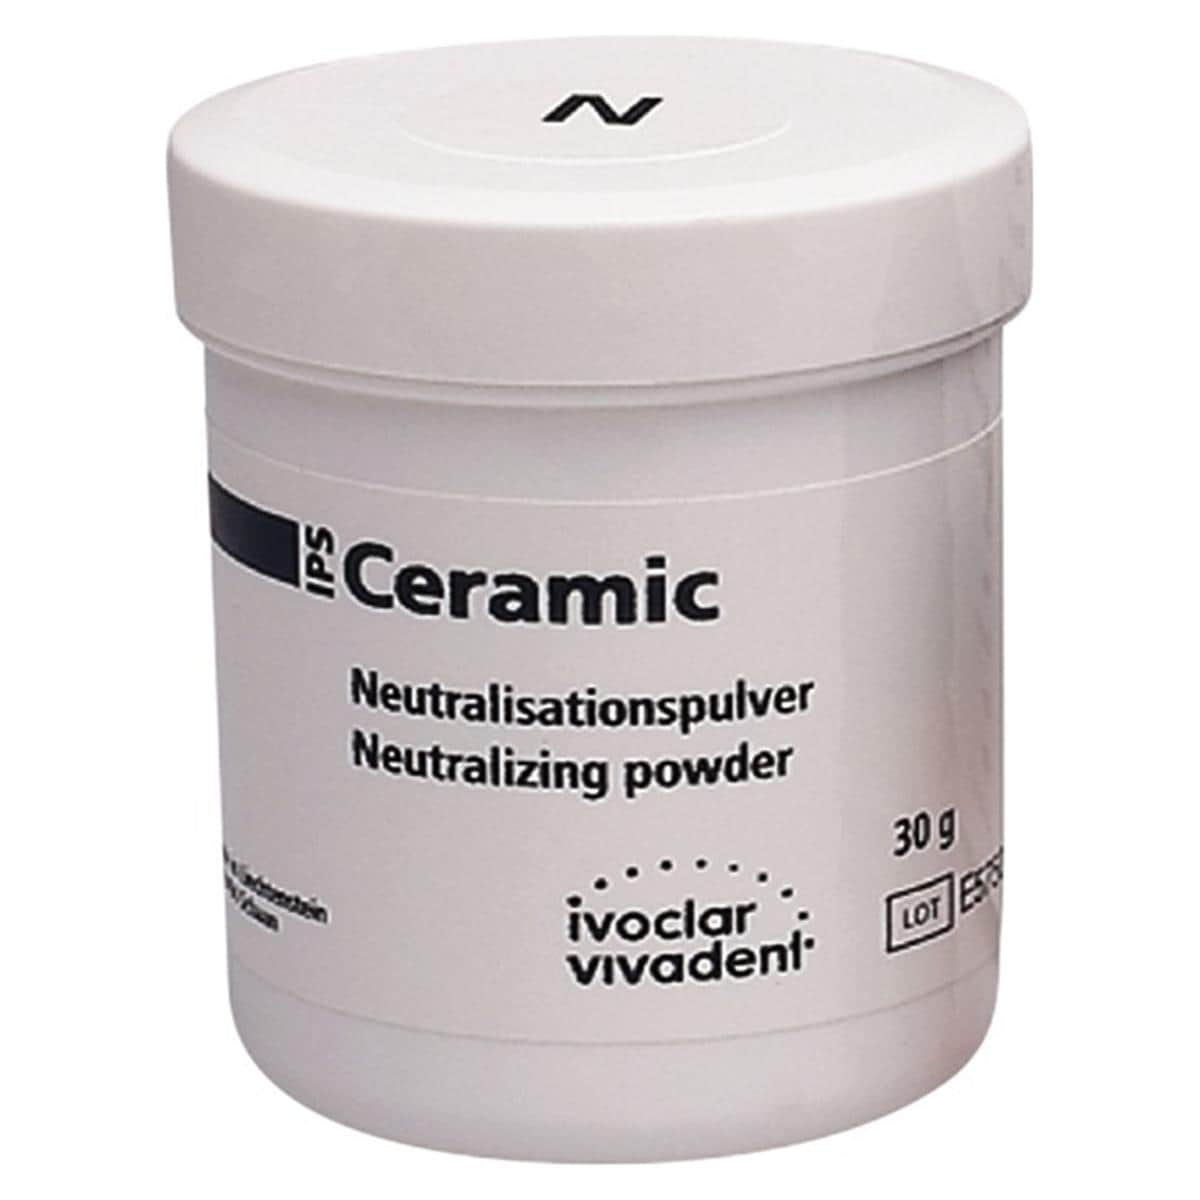 IPS Ceramic Neutralisationspulver - Packung 30 g